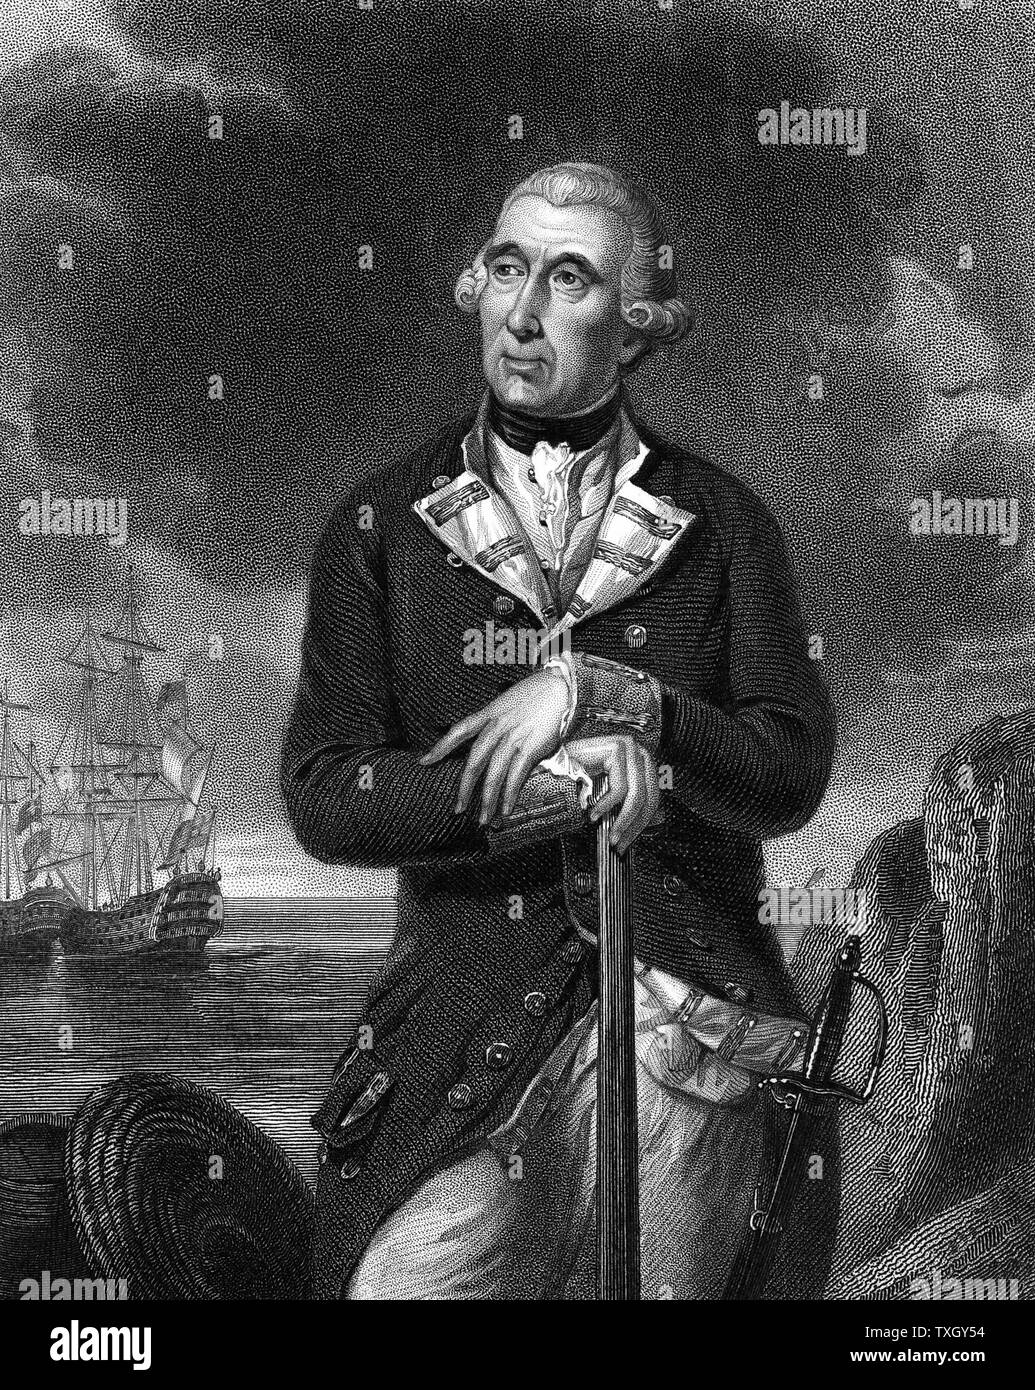 Richard Kempenfelt (1718-82) englische Marineoffizier schwedischer Abstammung. Konteradmiral 1780. Befehl von HM Schiffen in Ostindien im Siebenjährigen Krieg (1756-63). Und ertrunken sein Flaggschiff HMS Royal George 'aus Spithead Gravur nach Portrait von Tilly Kettle gekentert Stockfoto